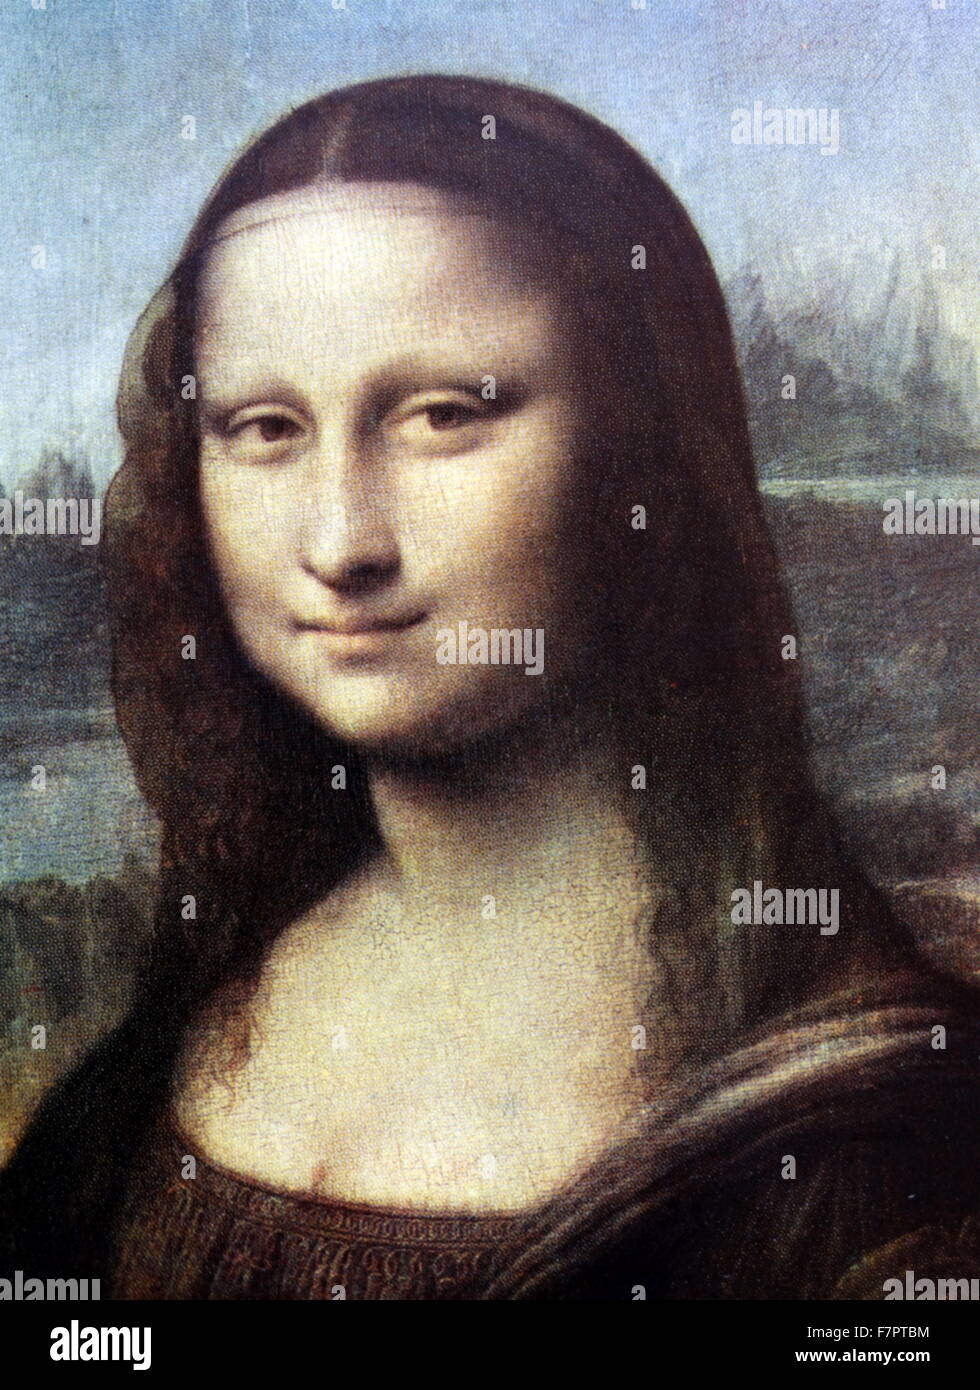 Dettaglio da Monna Lisa o La Gioconda o la Gioconda di Leonardo, dall'artista italiano Leonardo da Vinci, 1452 - 1519. Il dipinto, pensato per essere un ritratto di Lisa Gherardini, moglie di Francesco del Giocondo, è in olio su un bianco Lombardia pannello di pioppo, e si pensa sia stata dipinta tra il 1503 e il 1506. Foto Stock